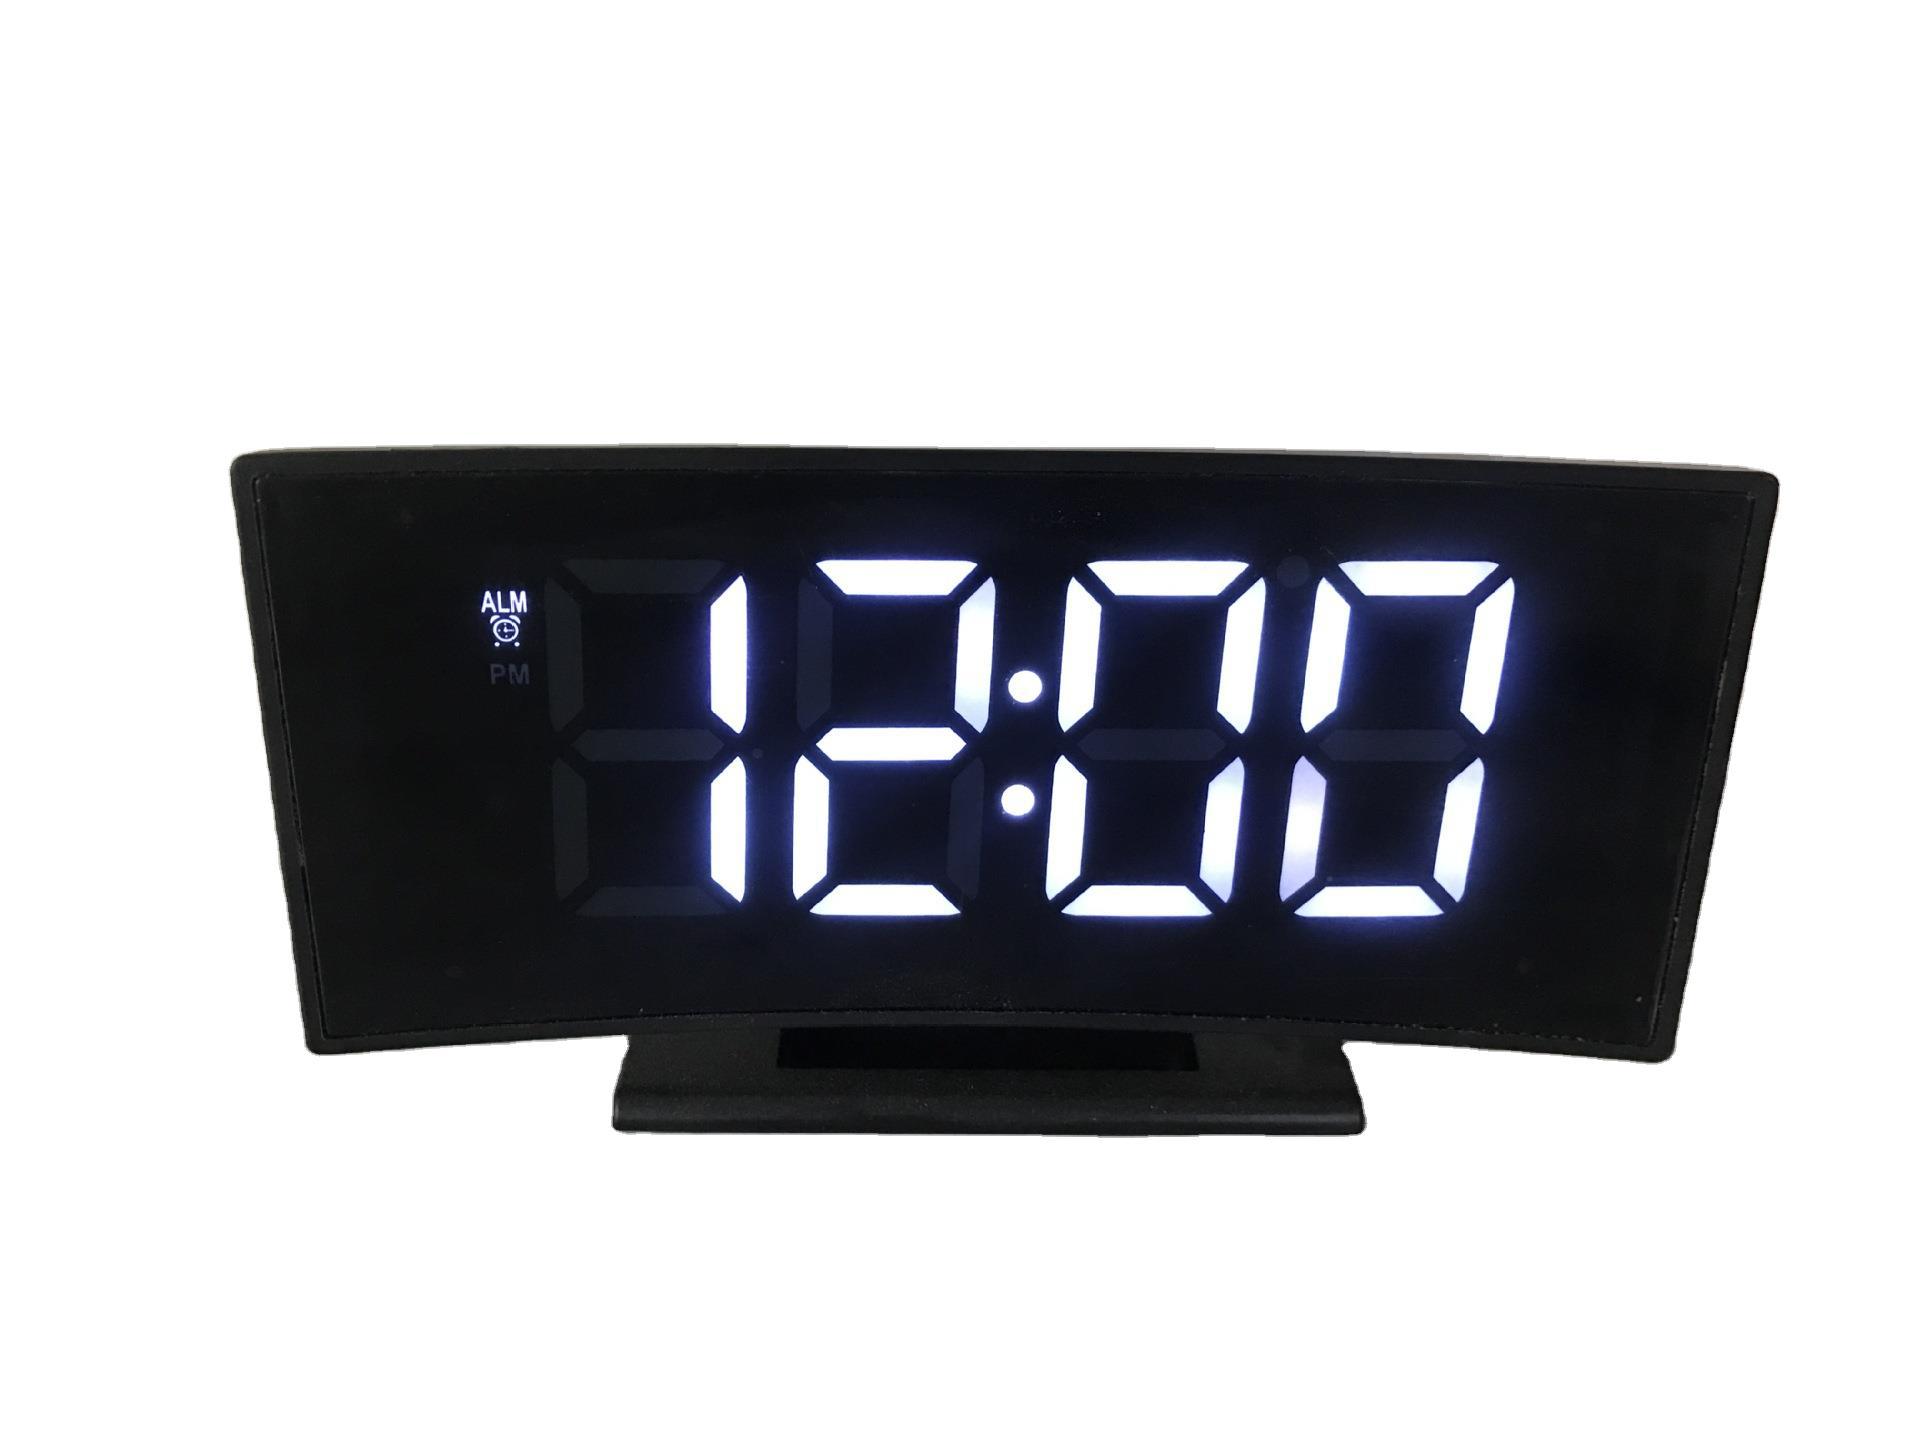 鏡面鐘曲面數字顯示屏電子貪睡鬧鐘創意兒童LED智能鐘DS-3621L